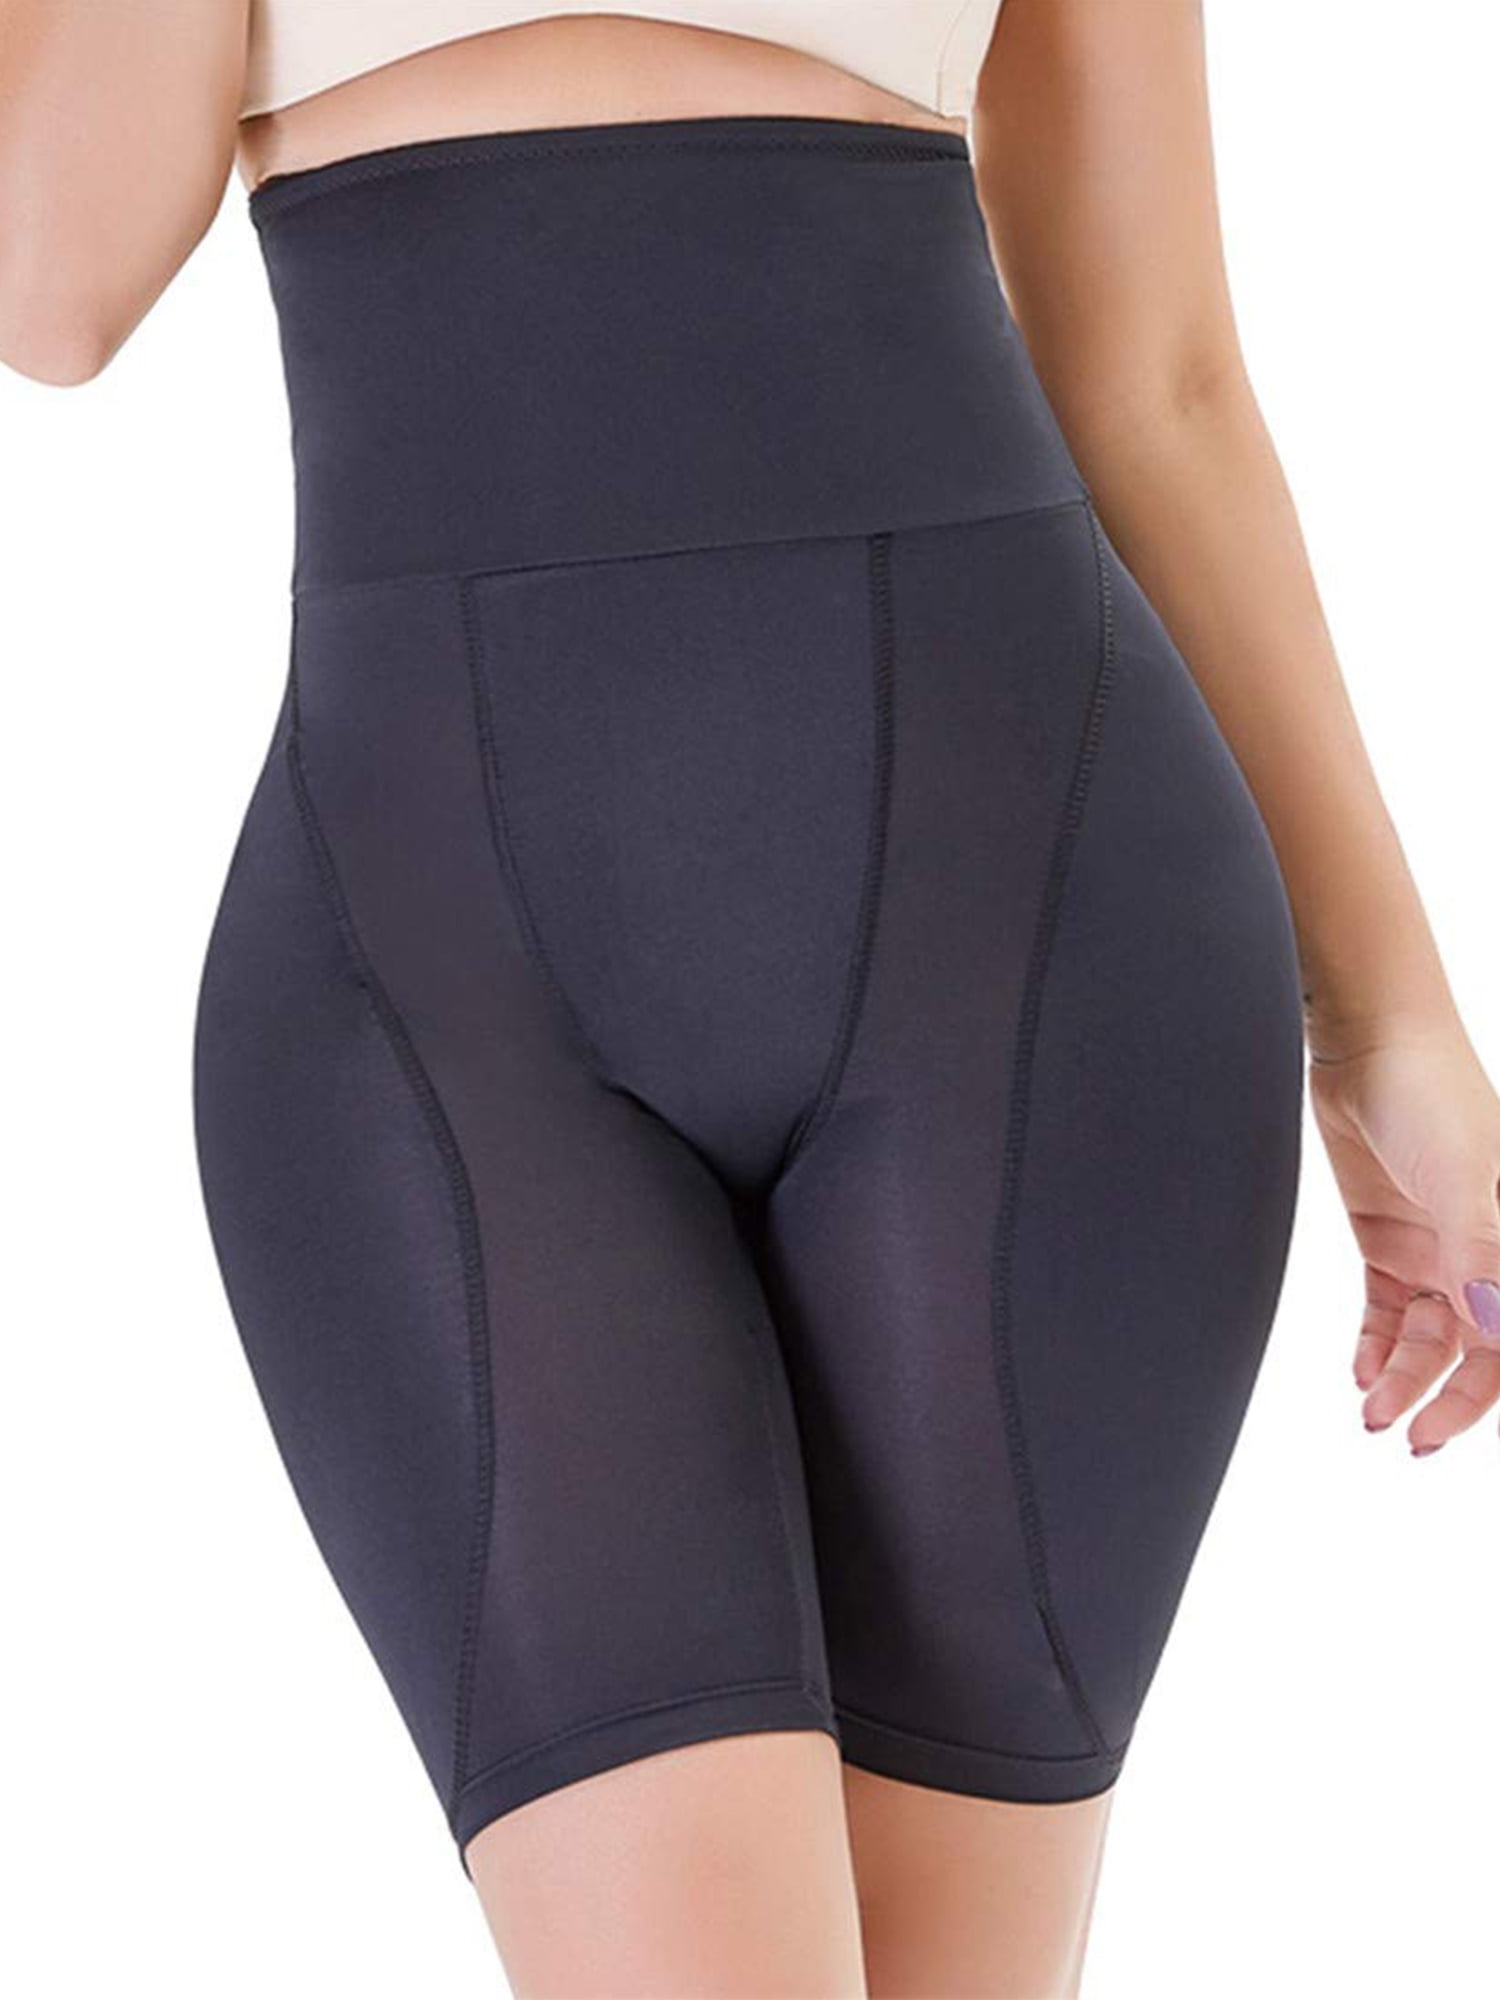 Lilvigor Padded Butt Lifter Shaper Hip Enhancer Shapewear Control Knickers  High Waist Women BBL Shorts Sexy Curvy 